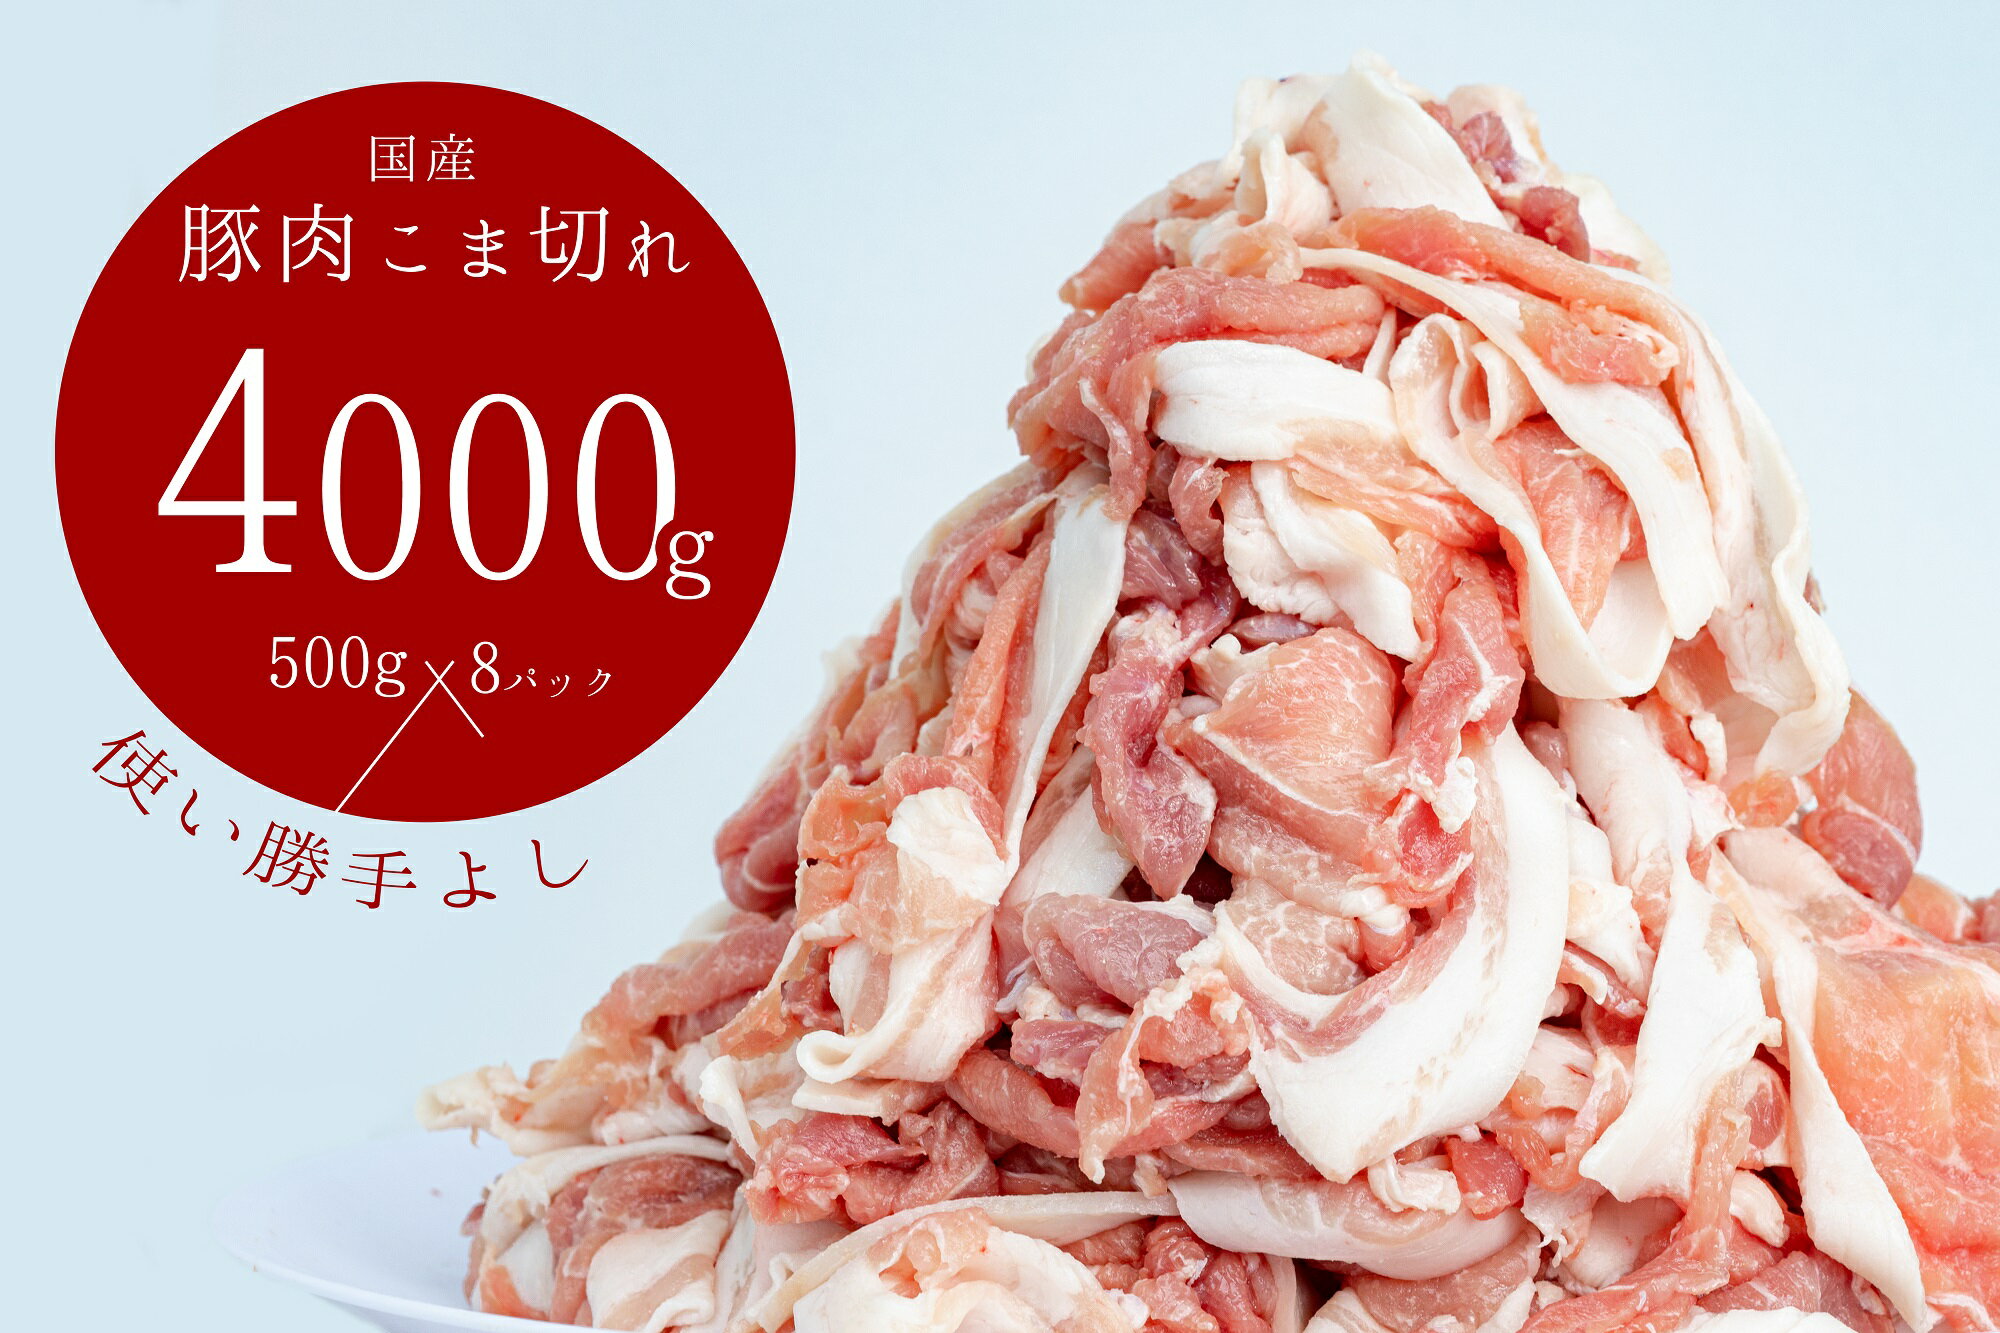 豚肉こま切れ4kg(500g×8袋)/香川県加工商品